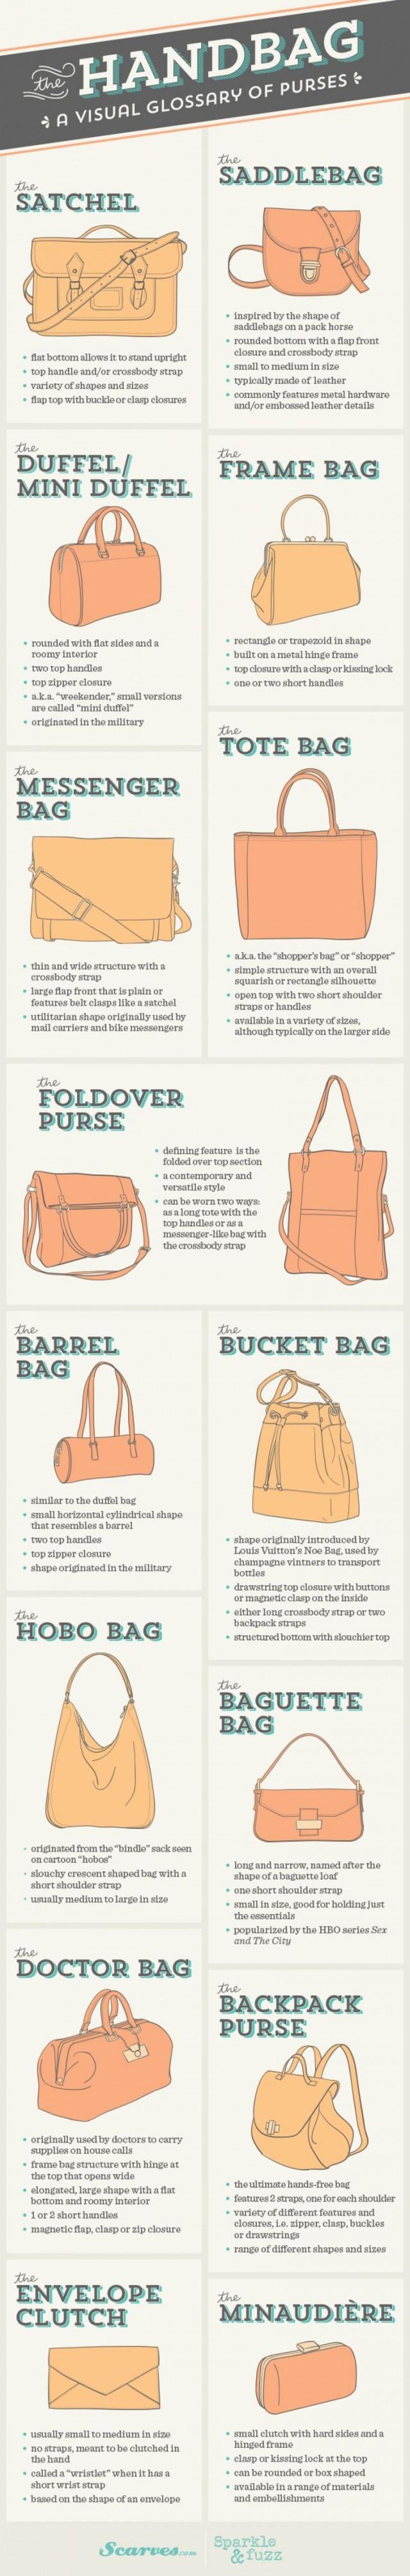 Bags - The Handbag #2533161 - Weddbook